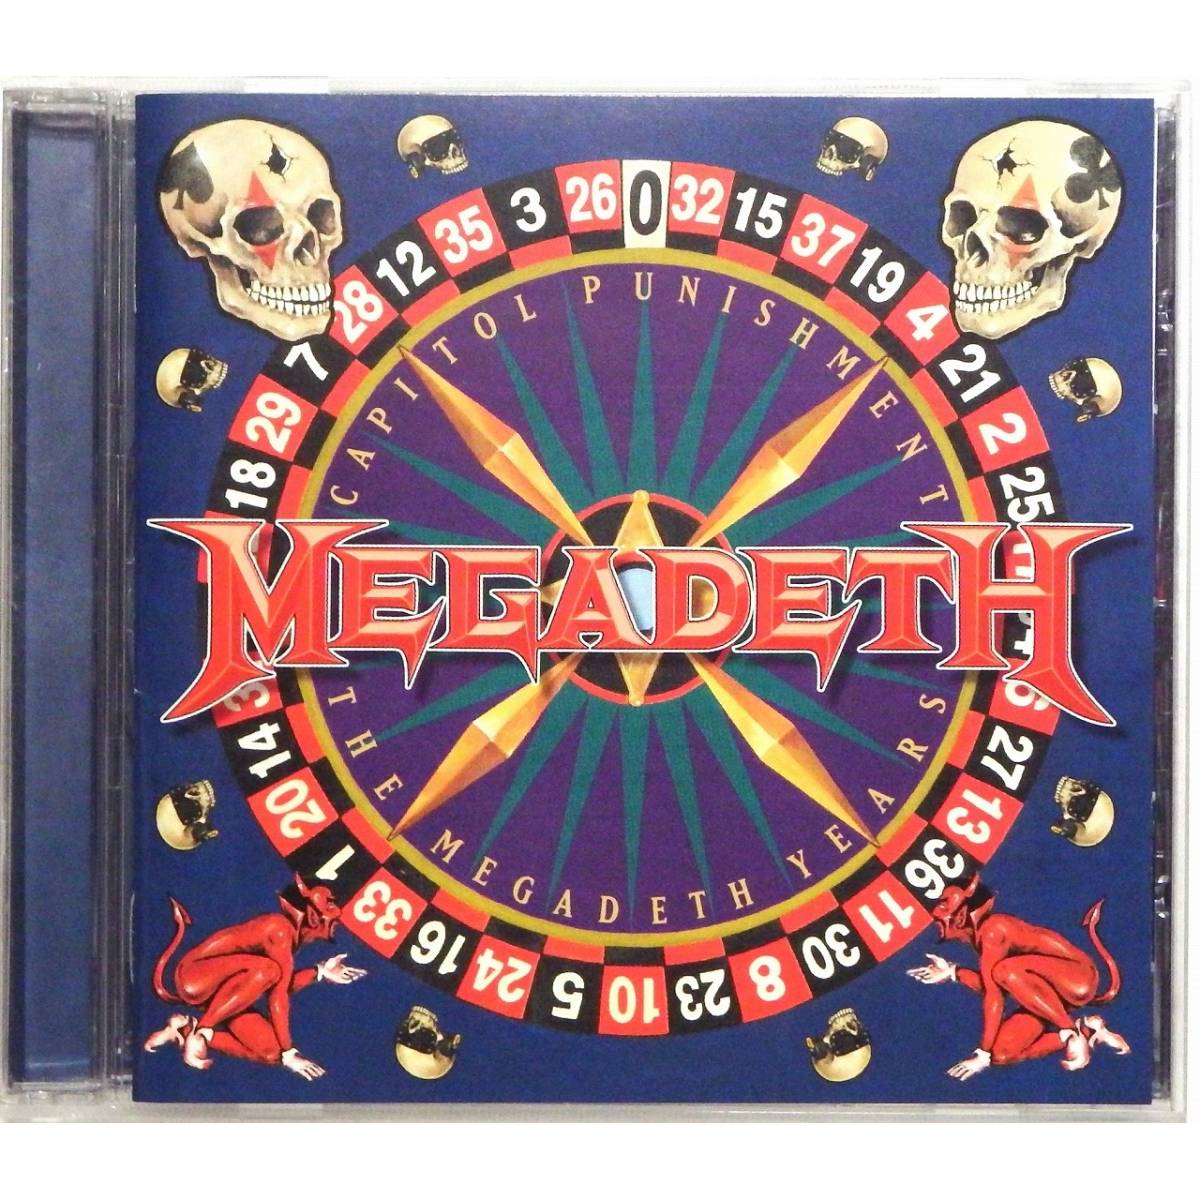 Megadeth / Capitol Punishment The Megadeth Years * mega tes/kyapitoru*panishu men to The * mega tes* year z* domestic record *